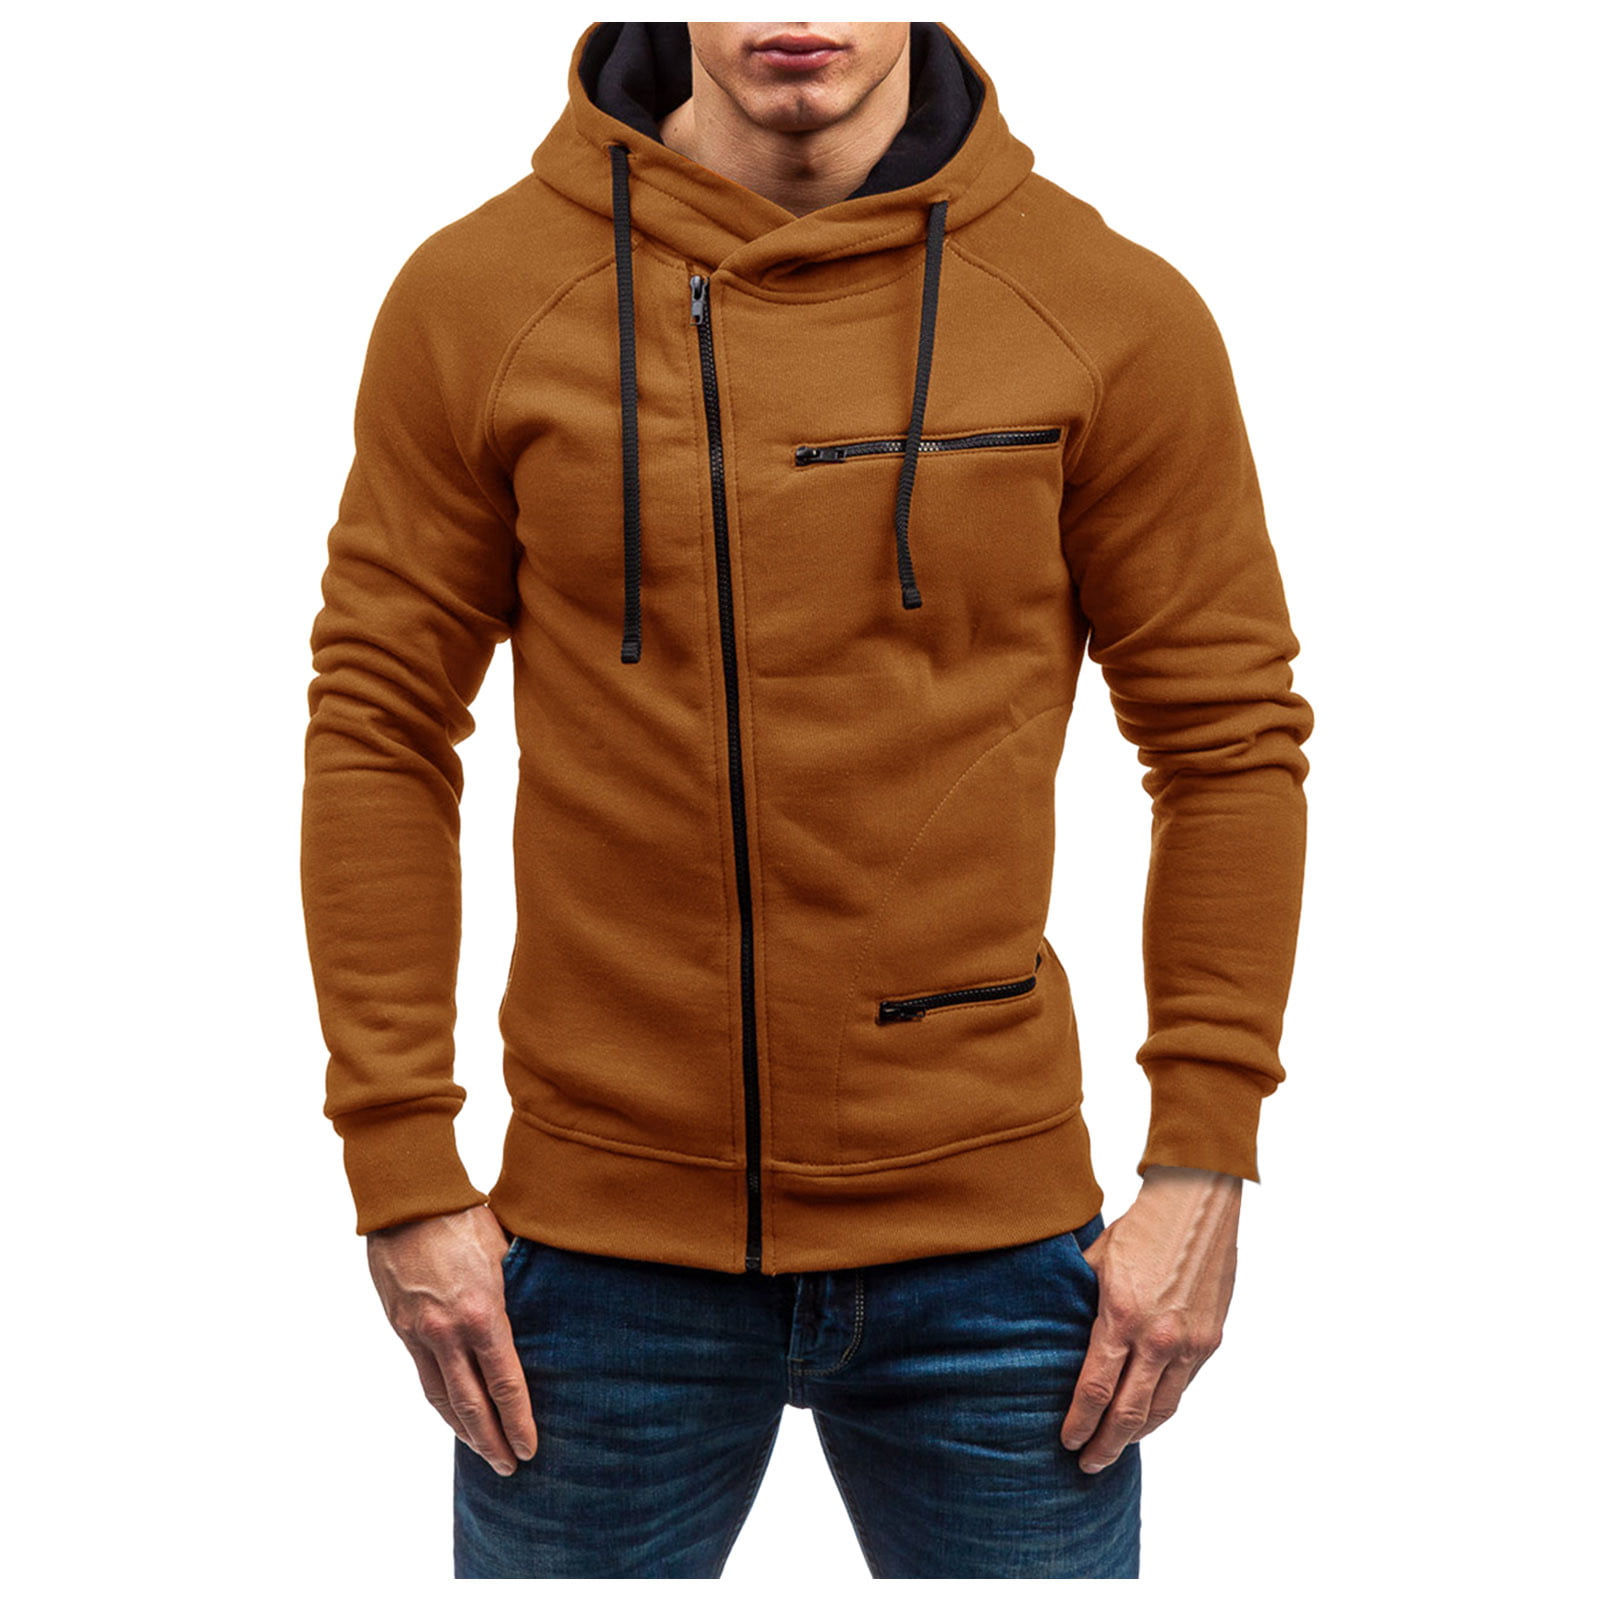 MODOQO Long Sleeve Winter Trench Coat for Men Warm Zipper Hoodies Jacket Top